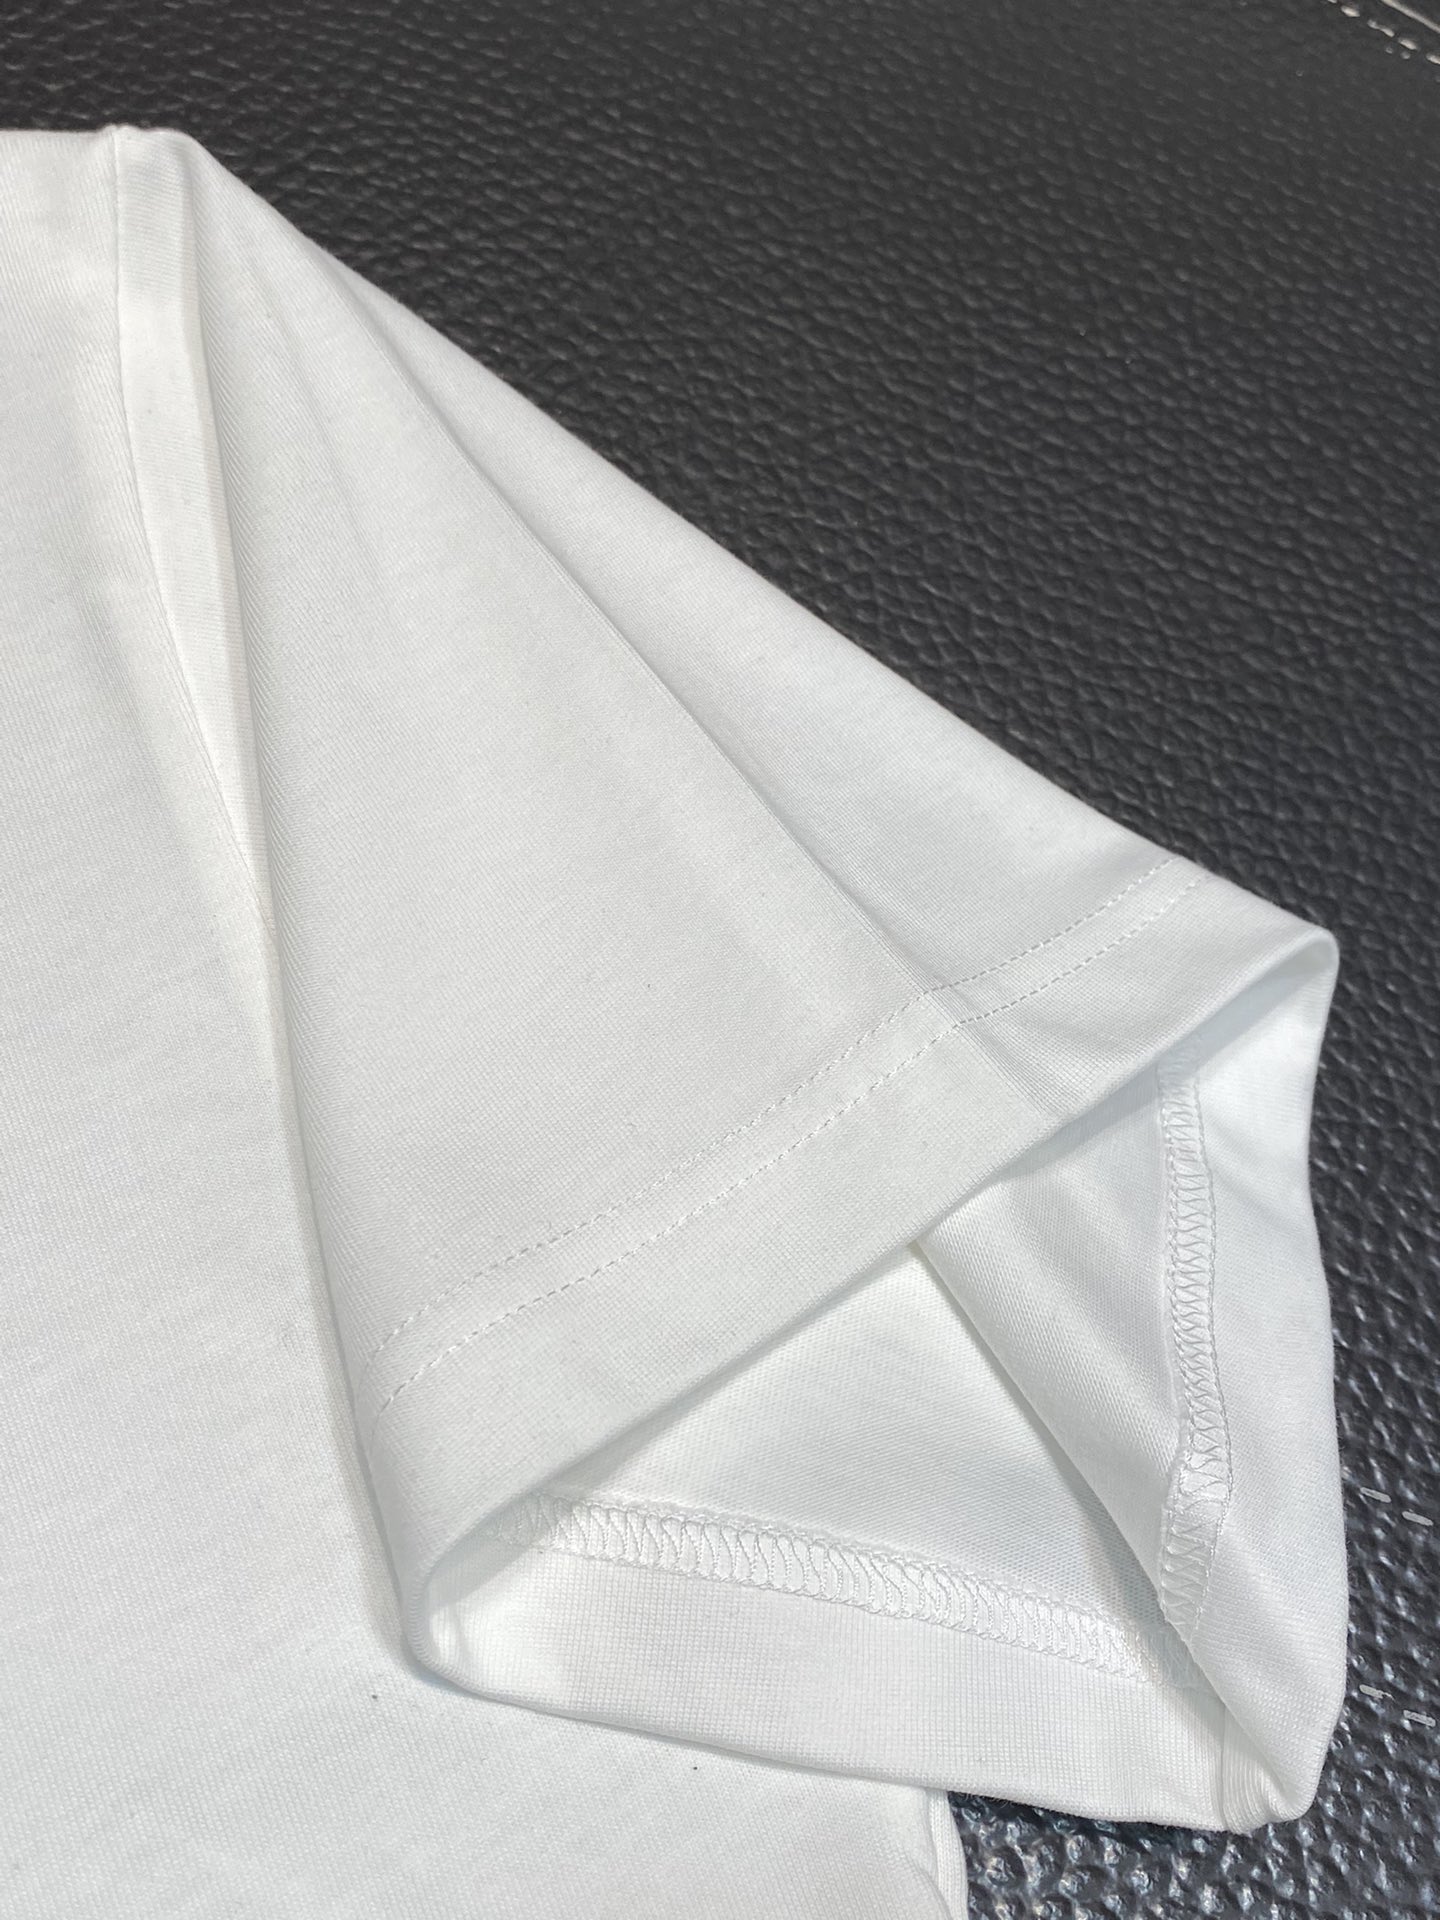 超激得の新品 ヴェトモン スカルtシャツスーパーコピートップス 短袖 プリント 純綿 品質保証 メンズ ホワイト_6